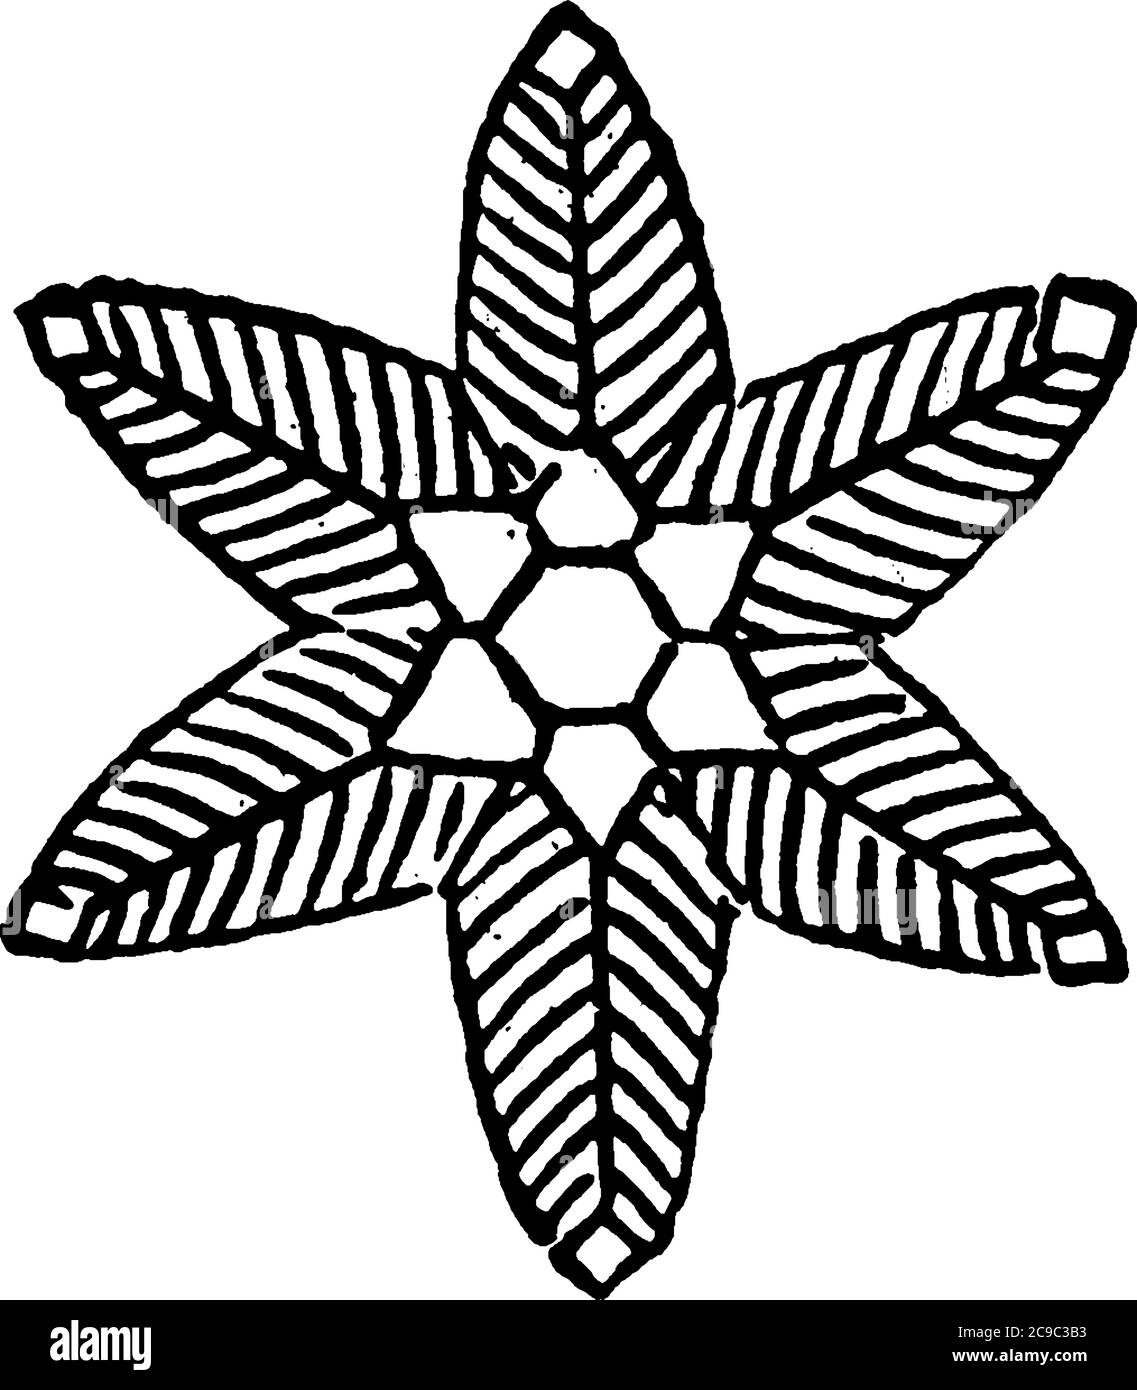 Eine typische Darstellung eines federleichten Eiskristalles, der Schneeflocke, zeigt eine zarte sechsfache Symmetrie, Vintage-Linienzeichnung oder Gravur illustraa Stock Vektor